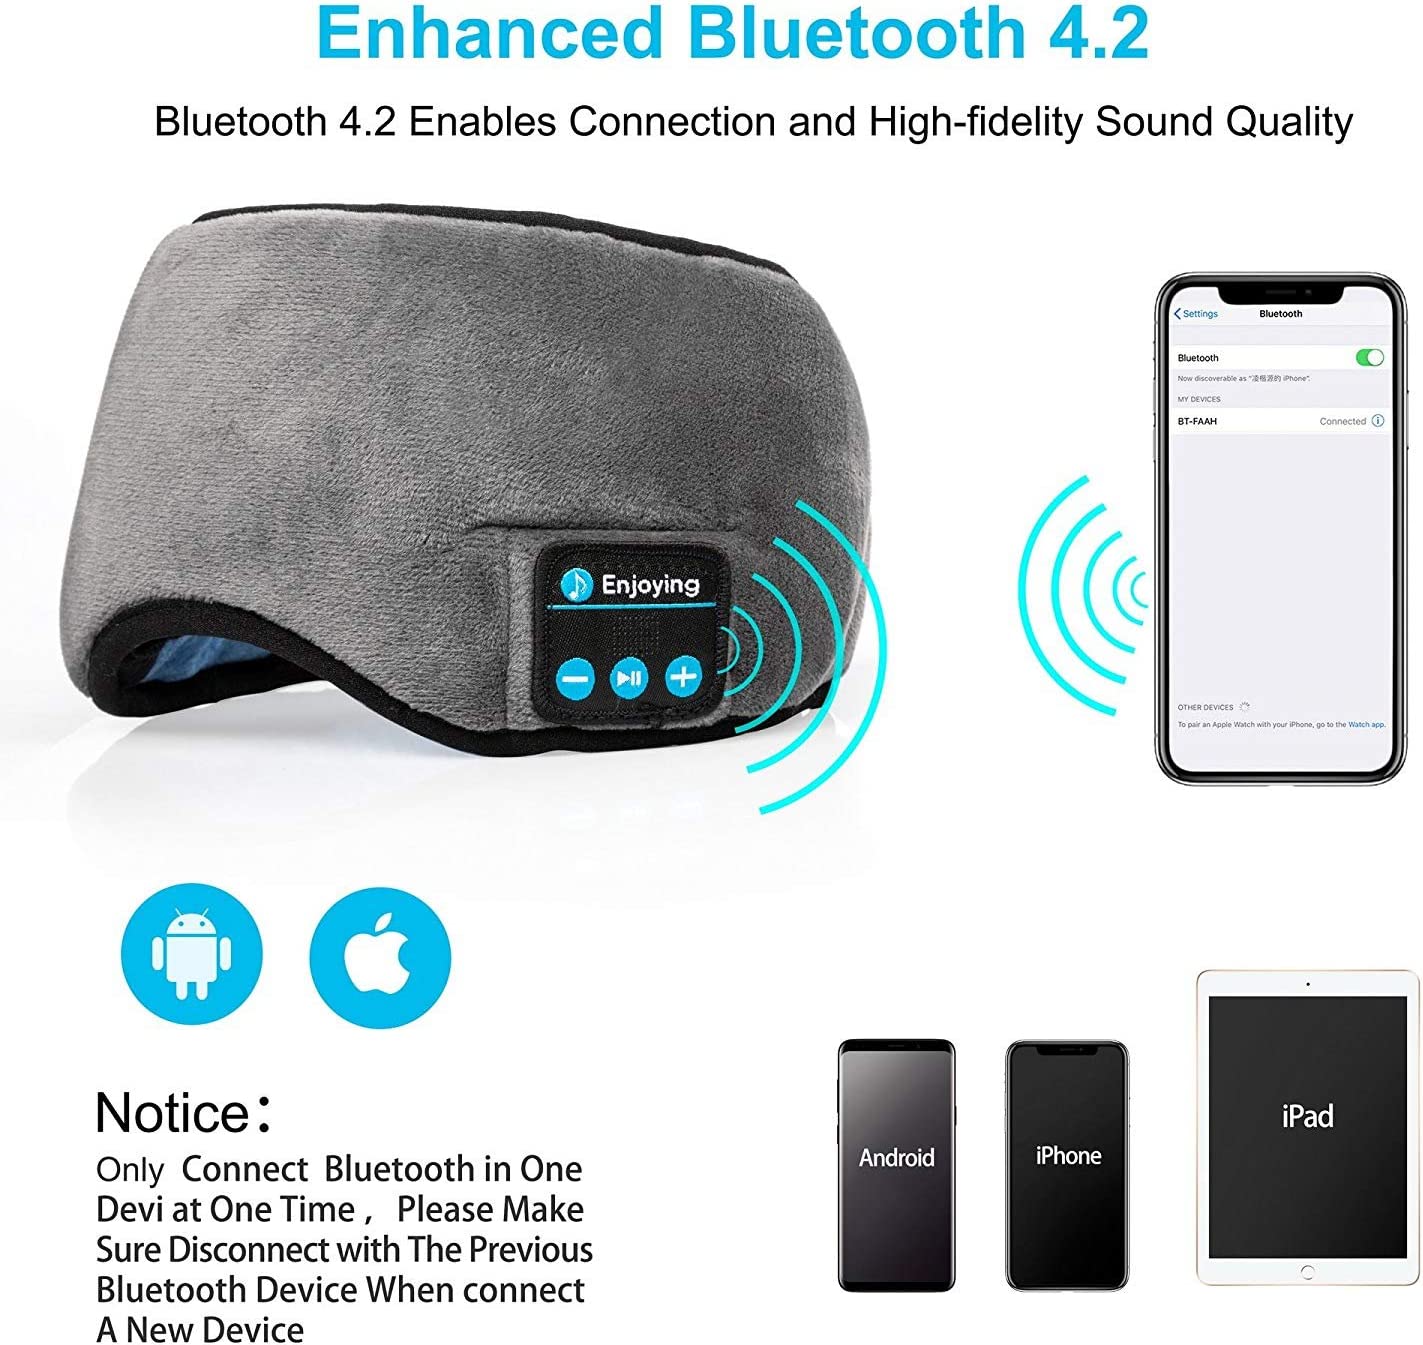 Tapa Olho Máscara Dormir Fone de Ouvido Bluetooth